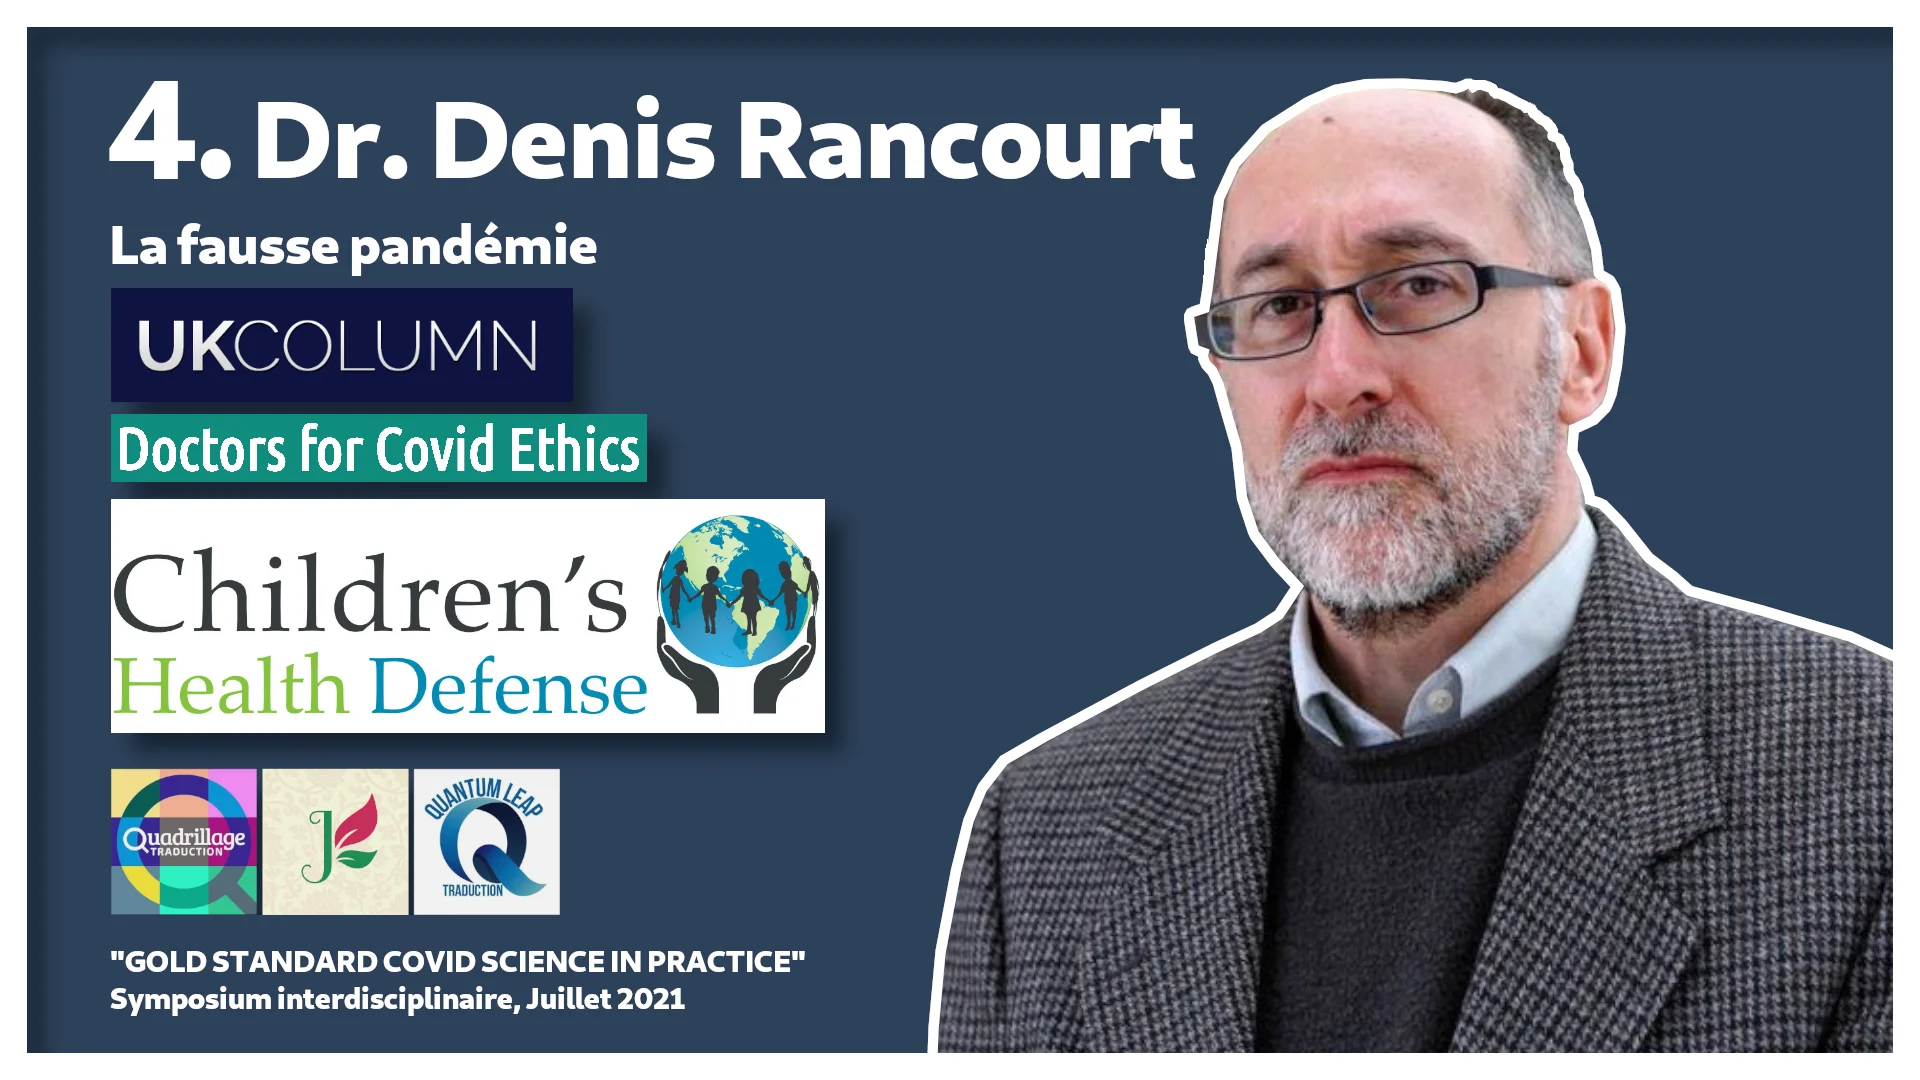 #4 : Dr. Denis Rancourt sur la fausse pandémie